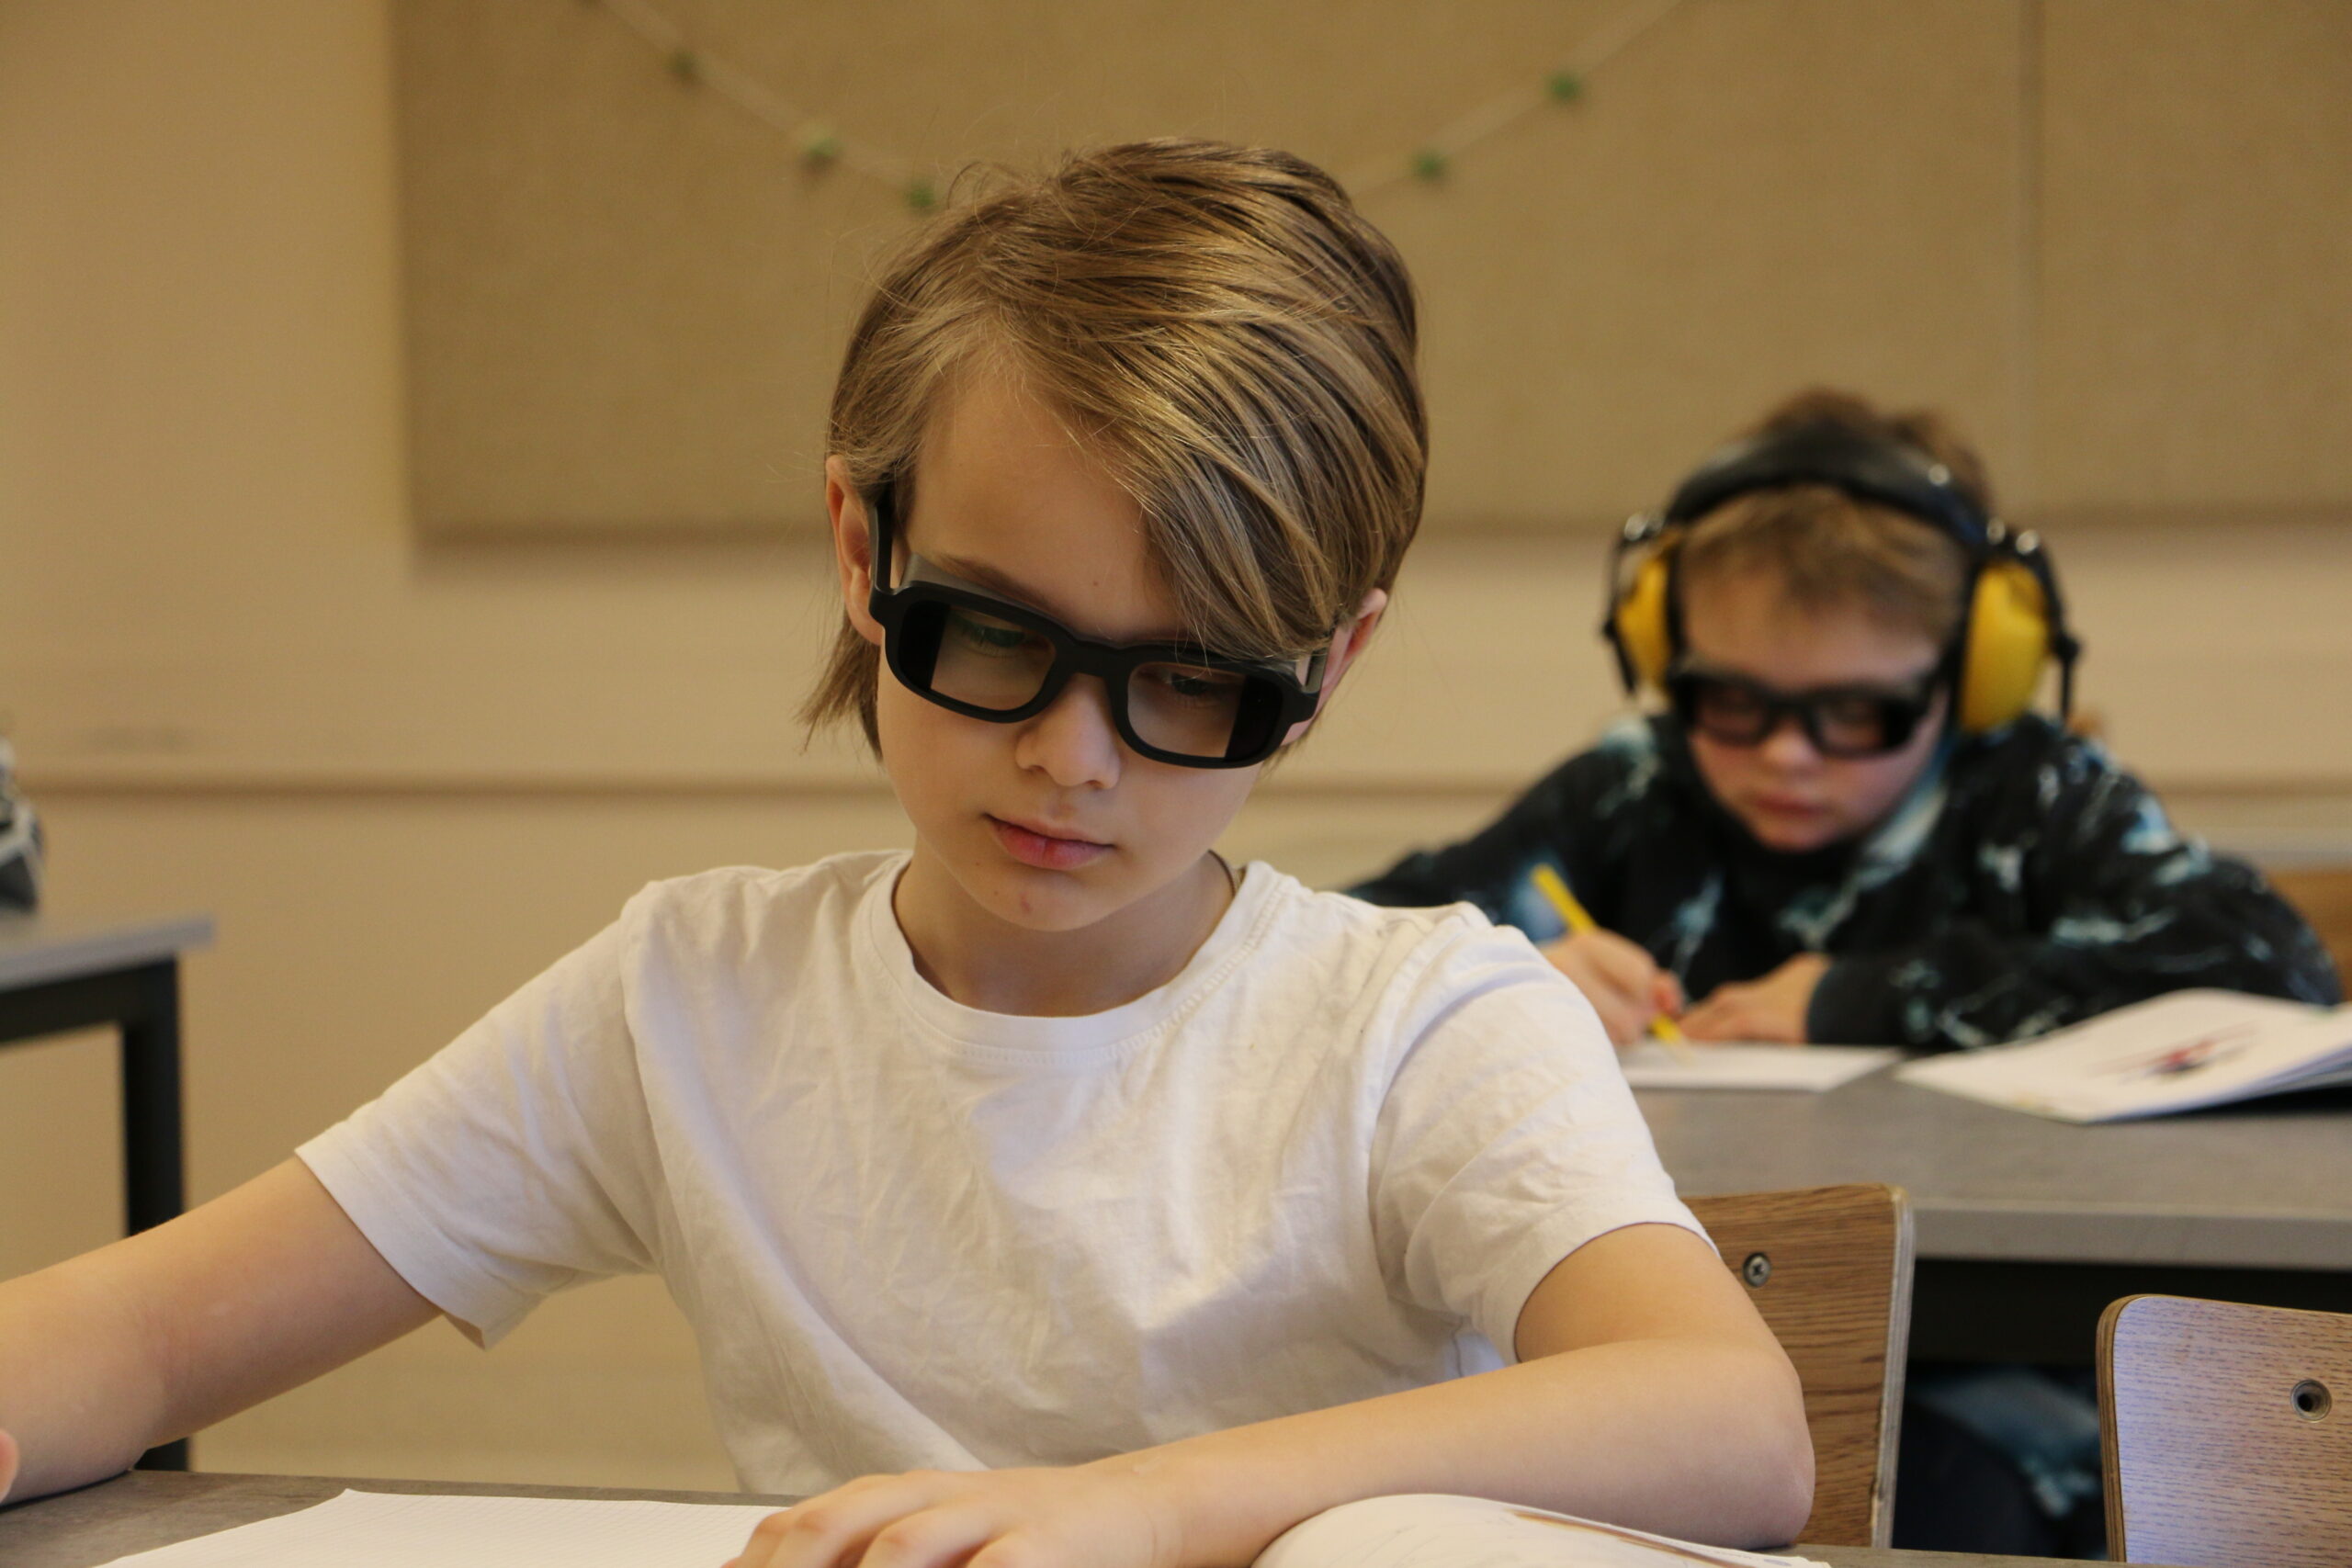 Fokuserade elev med QuietFrames sitter framför klasskamrat som har både QuietFrames och hörselkåpor